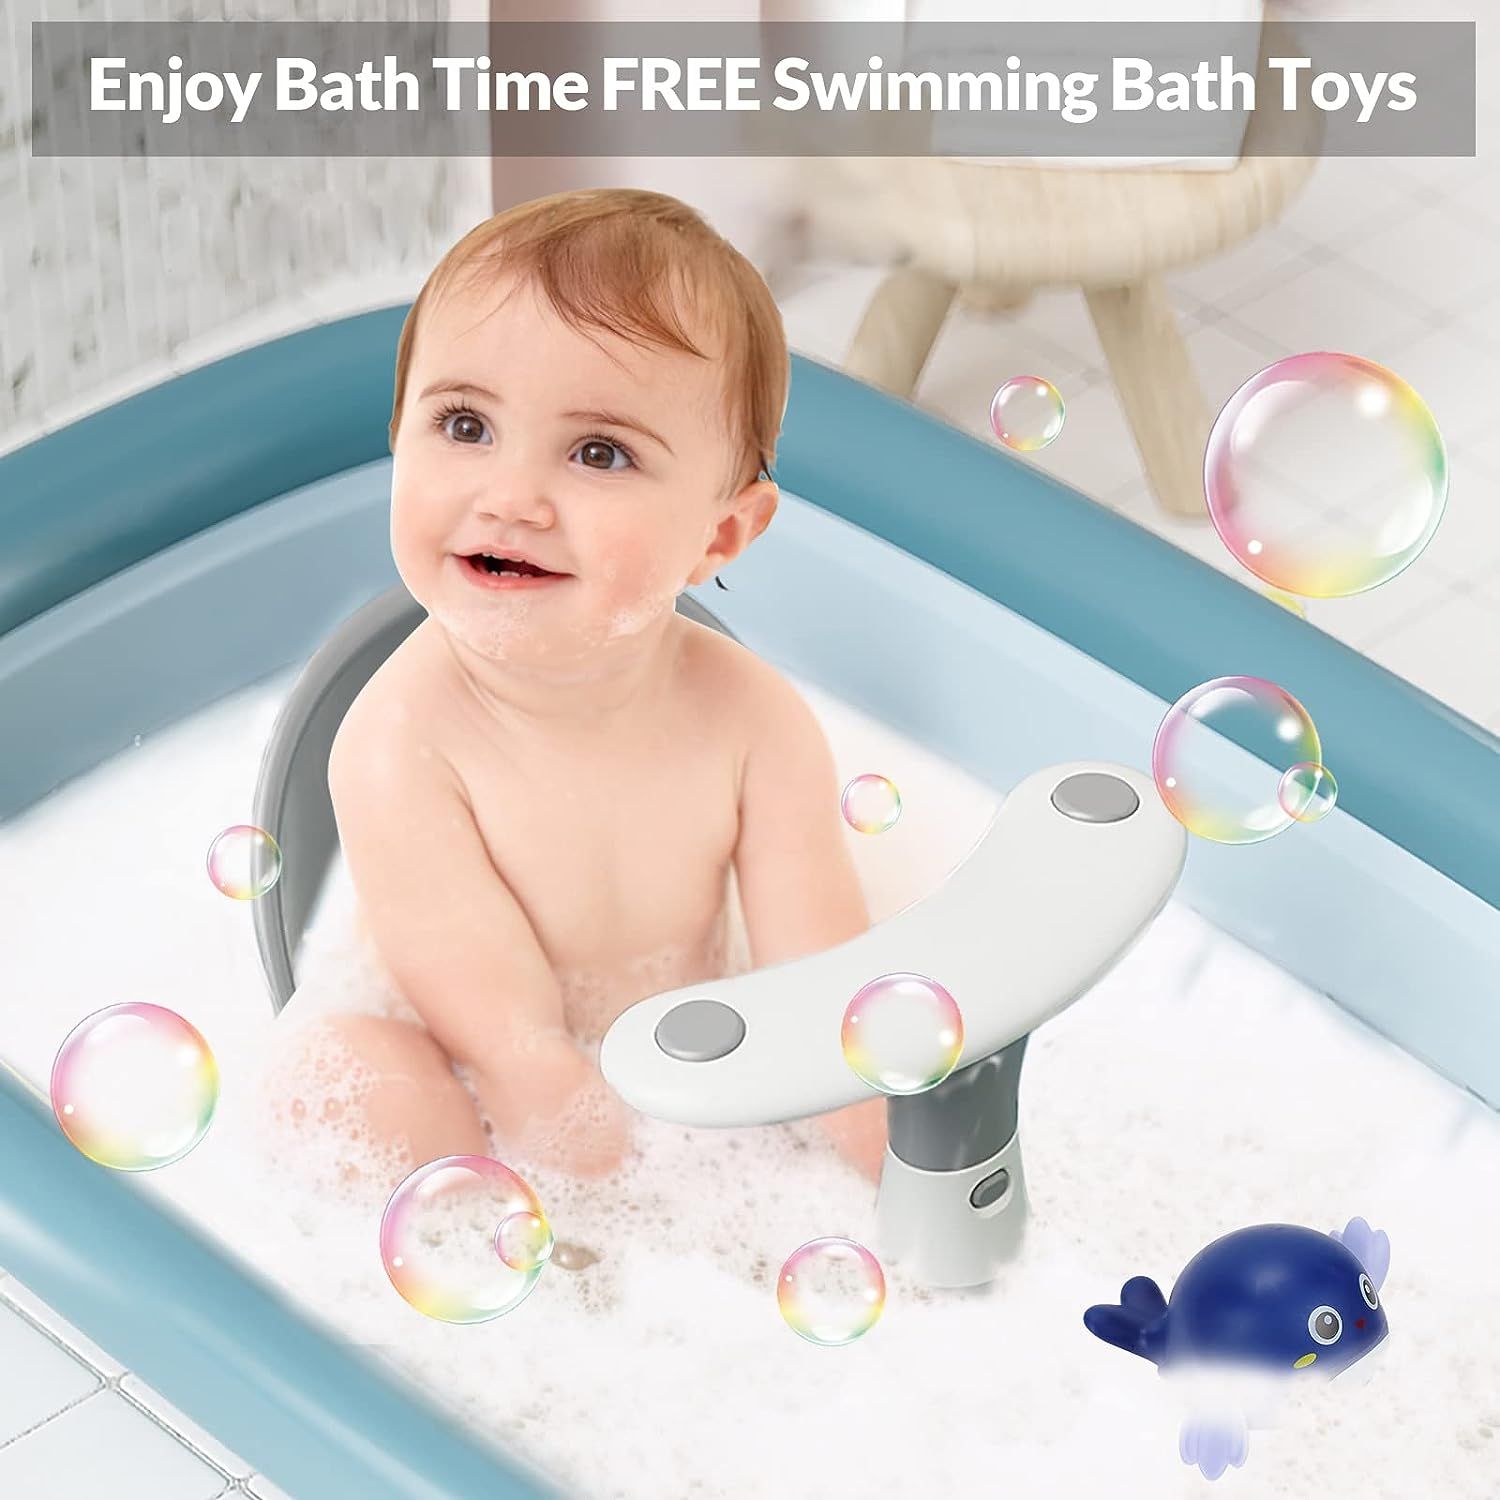 Baby Bath Bathtub Thermometer For Infant - Safety Bath Tub Water